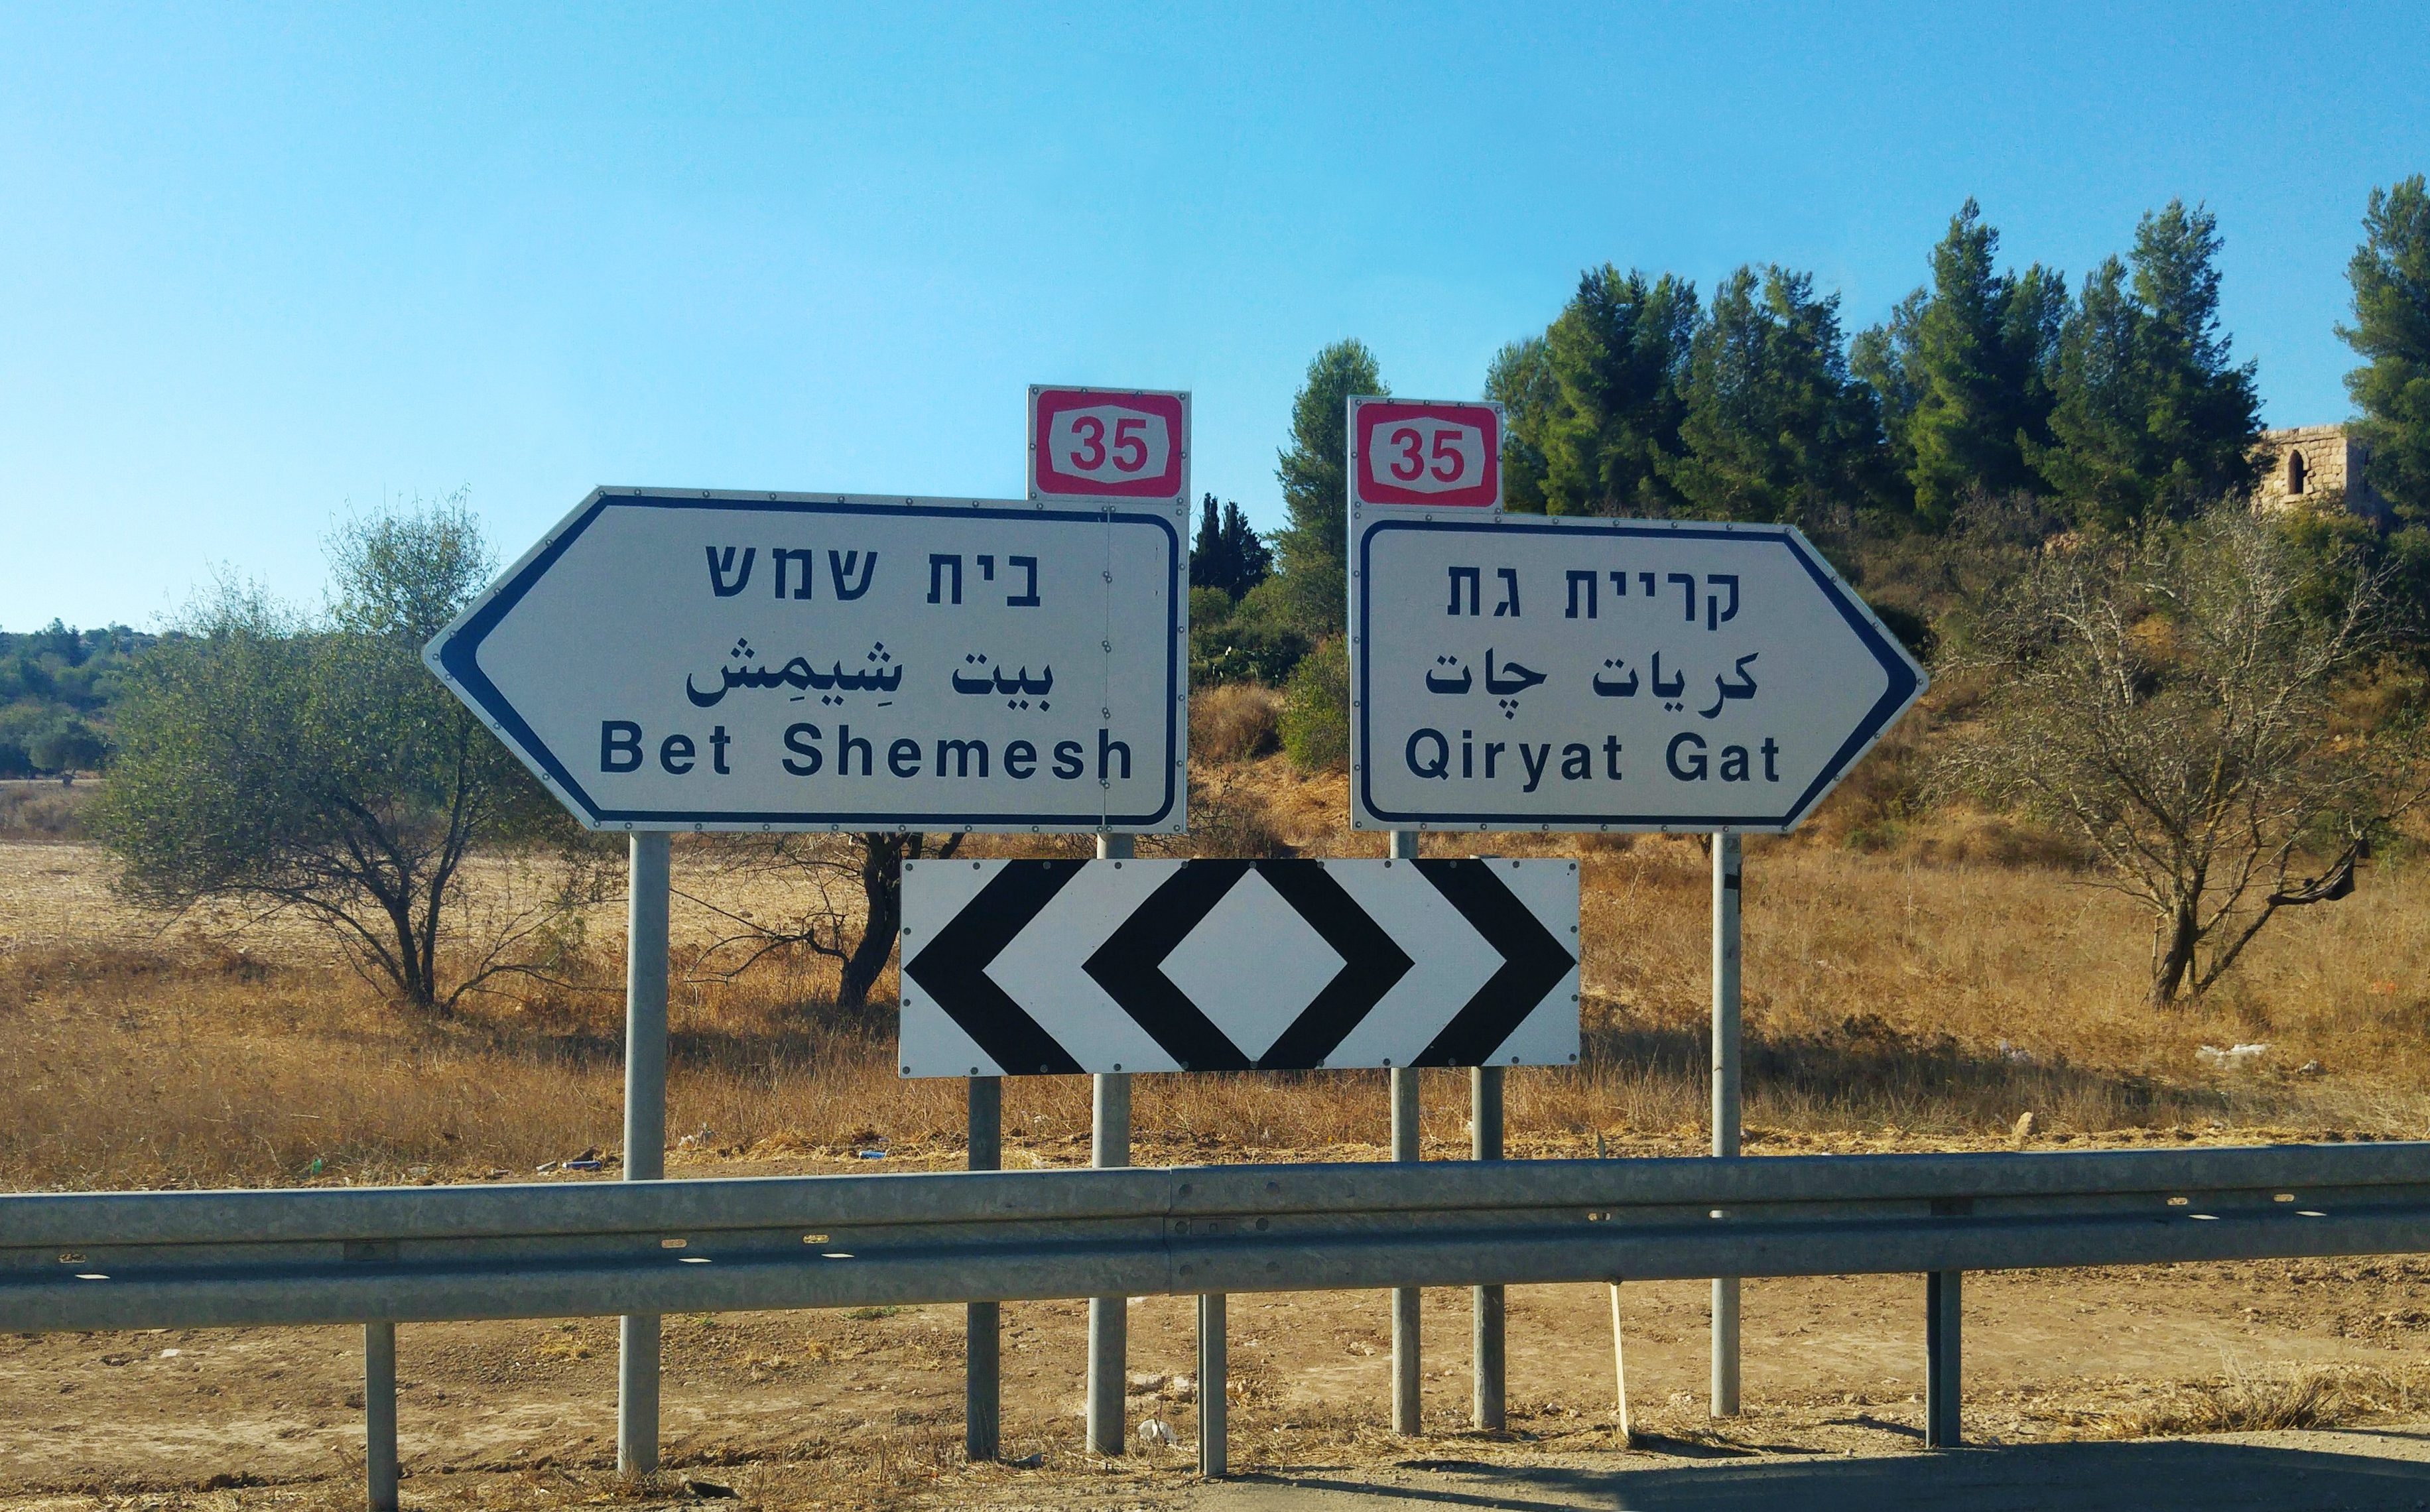 Straßenschilder nach Bet Shemesh in die linke Richtung und nach Quiryat Gat in die andere Richtung